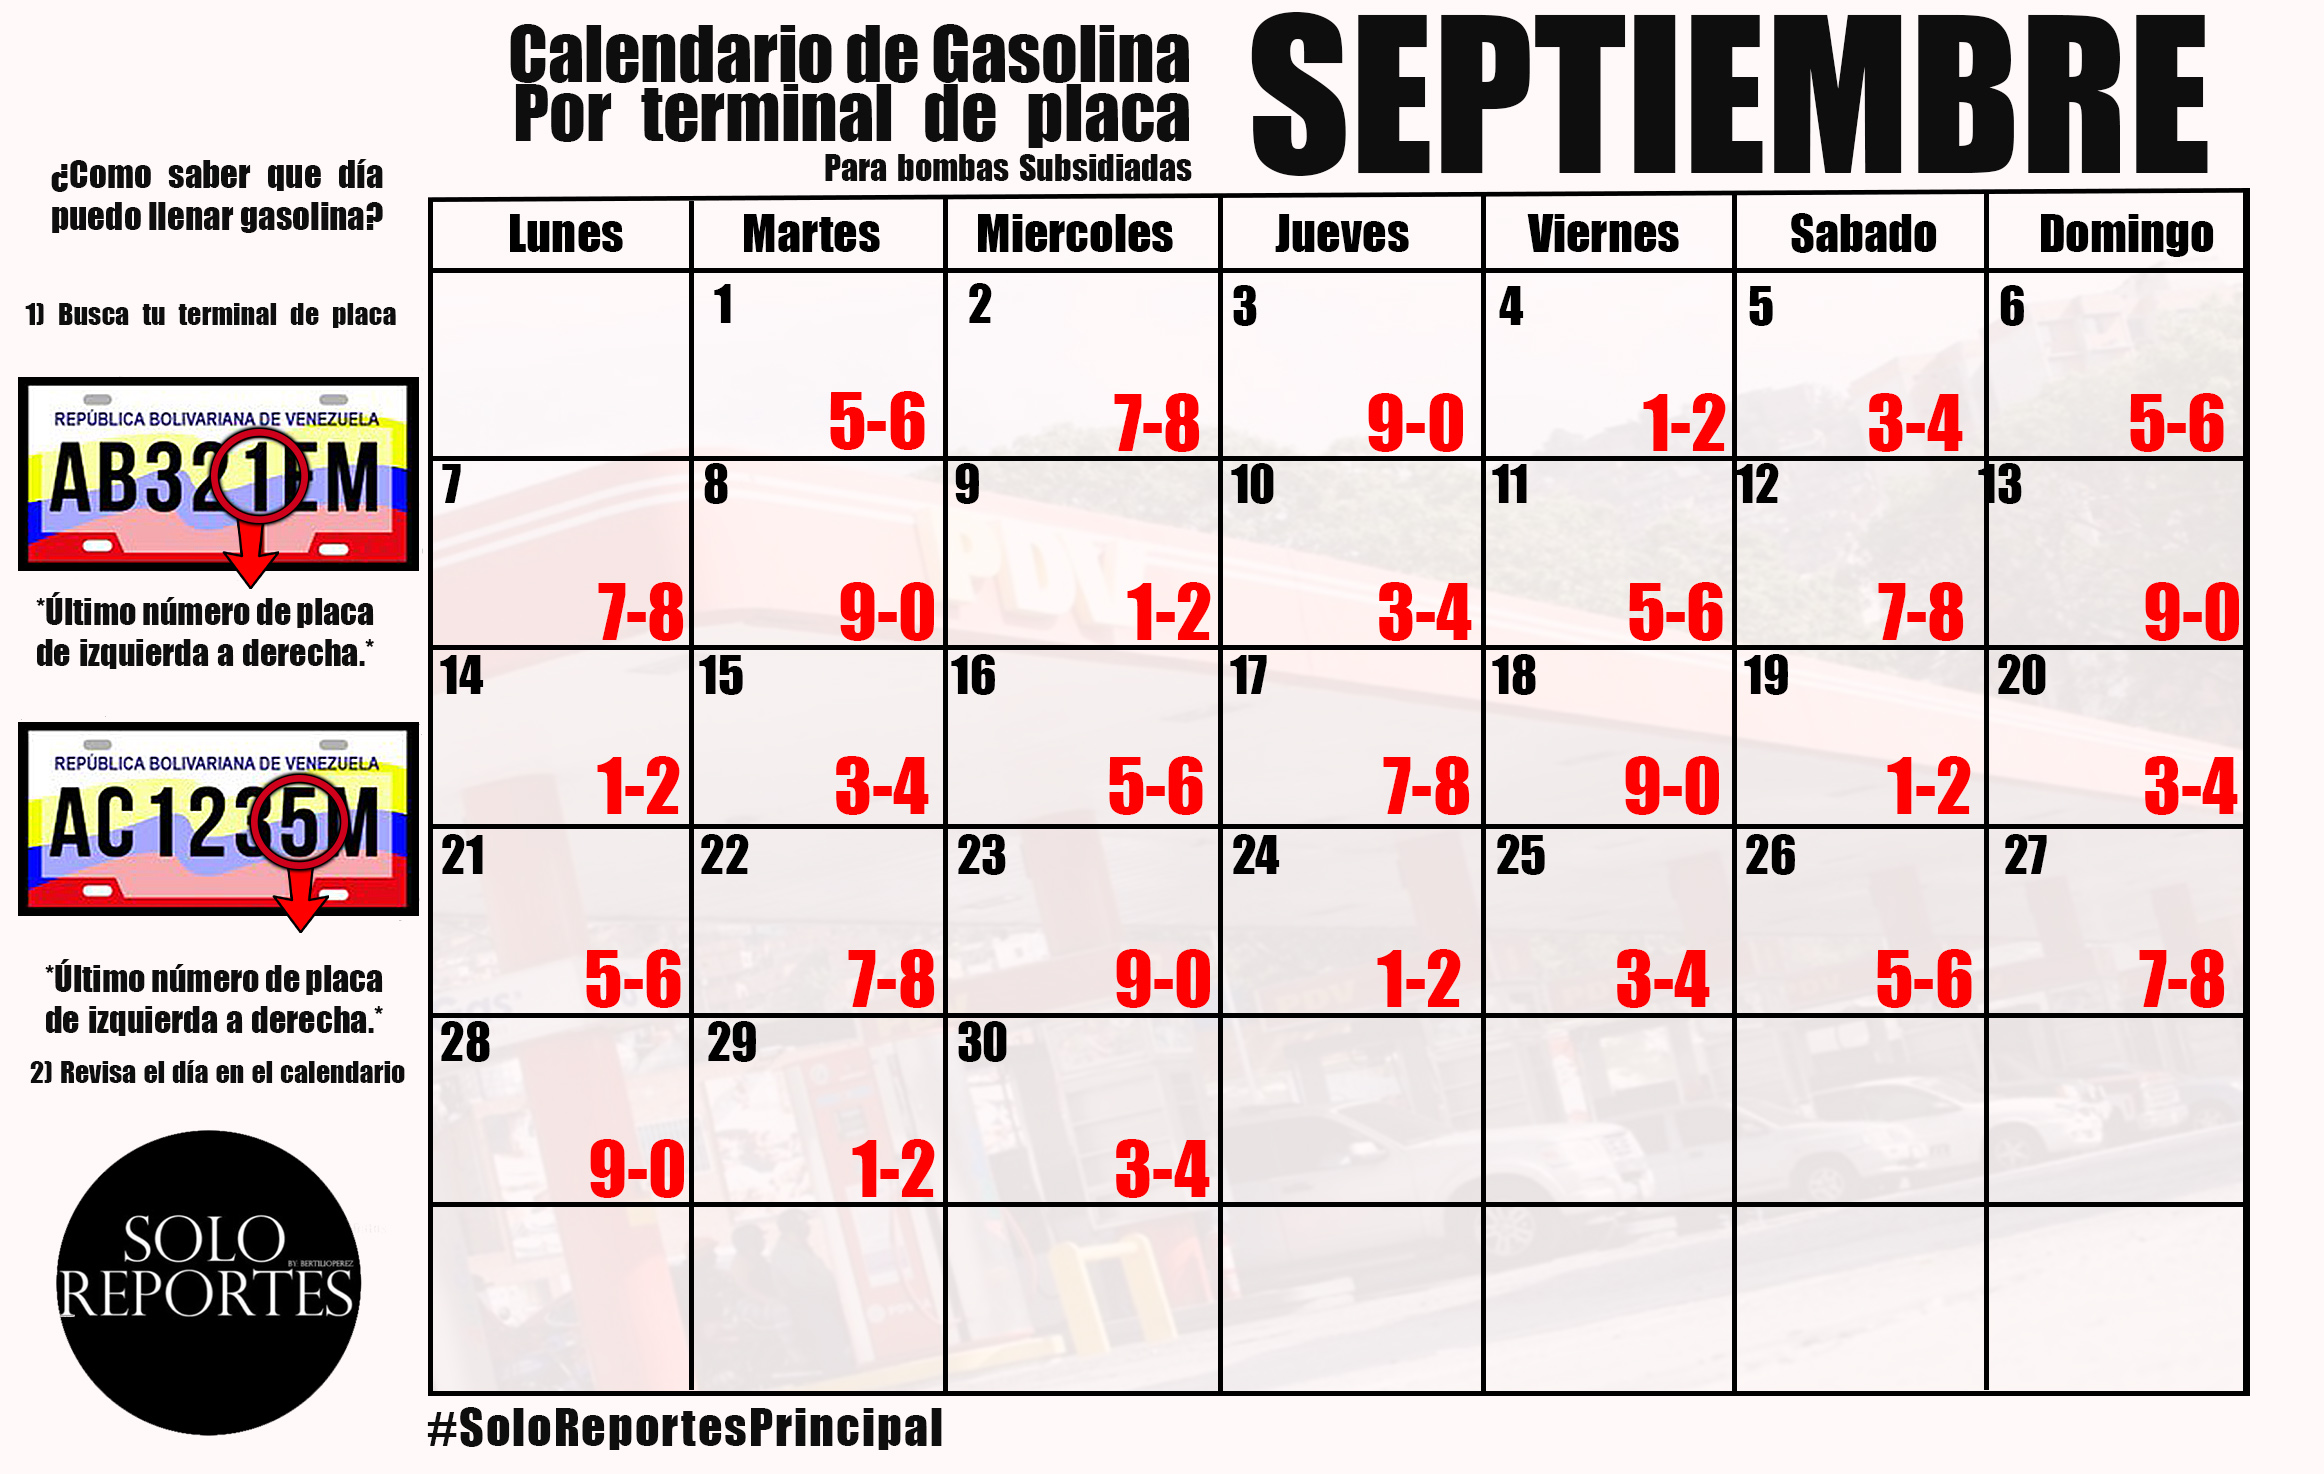 Este será el calendario de septiembre para surtir gasolina por terminal de placa